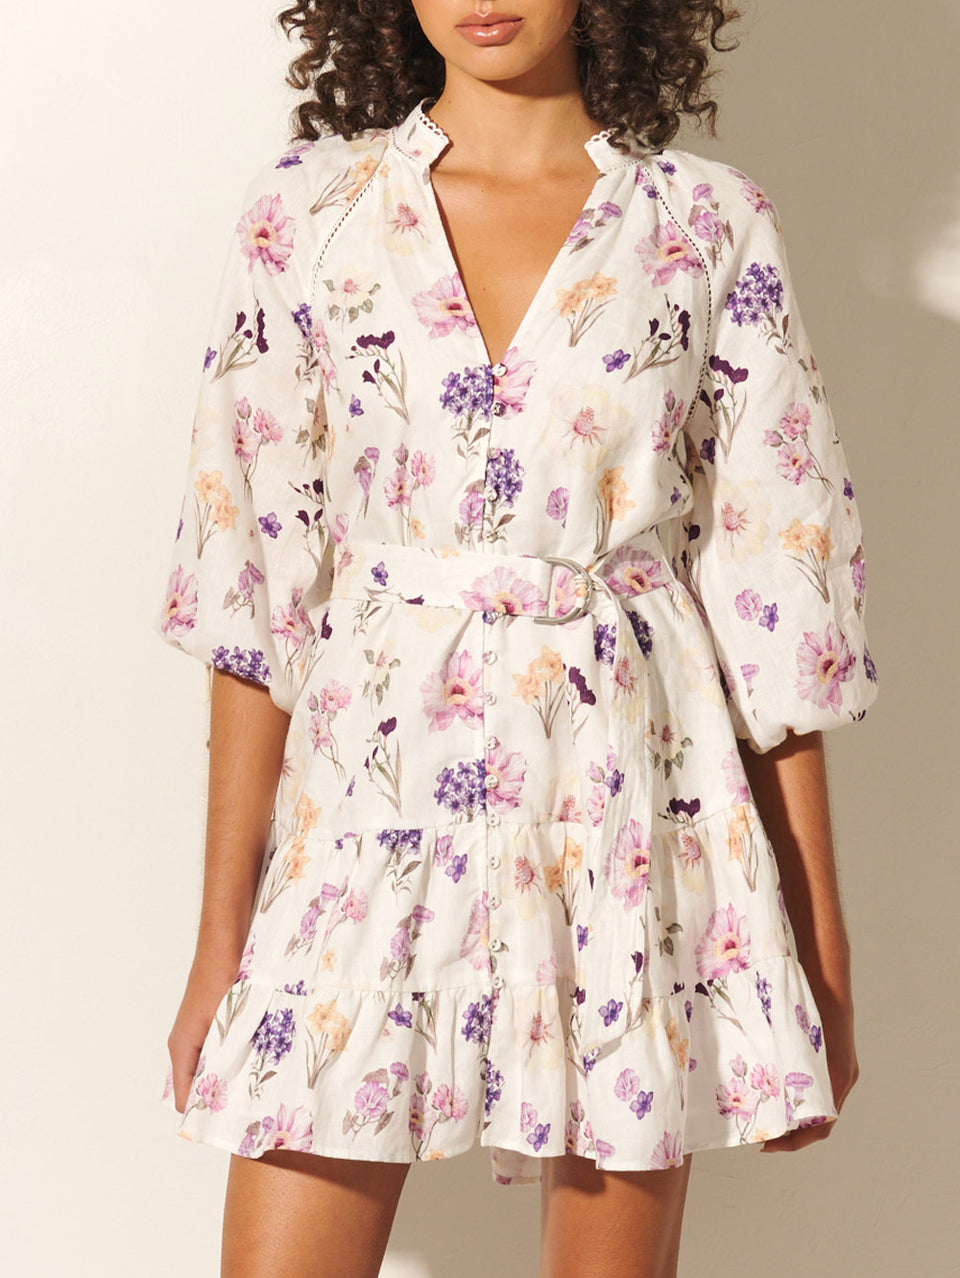 Phoebe Mini Dress KIVARI | Model wears ivory and purple floral mini dress close up